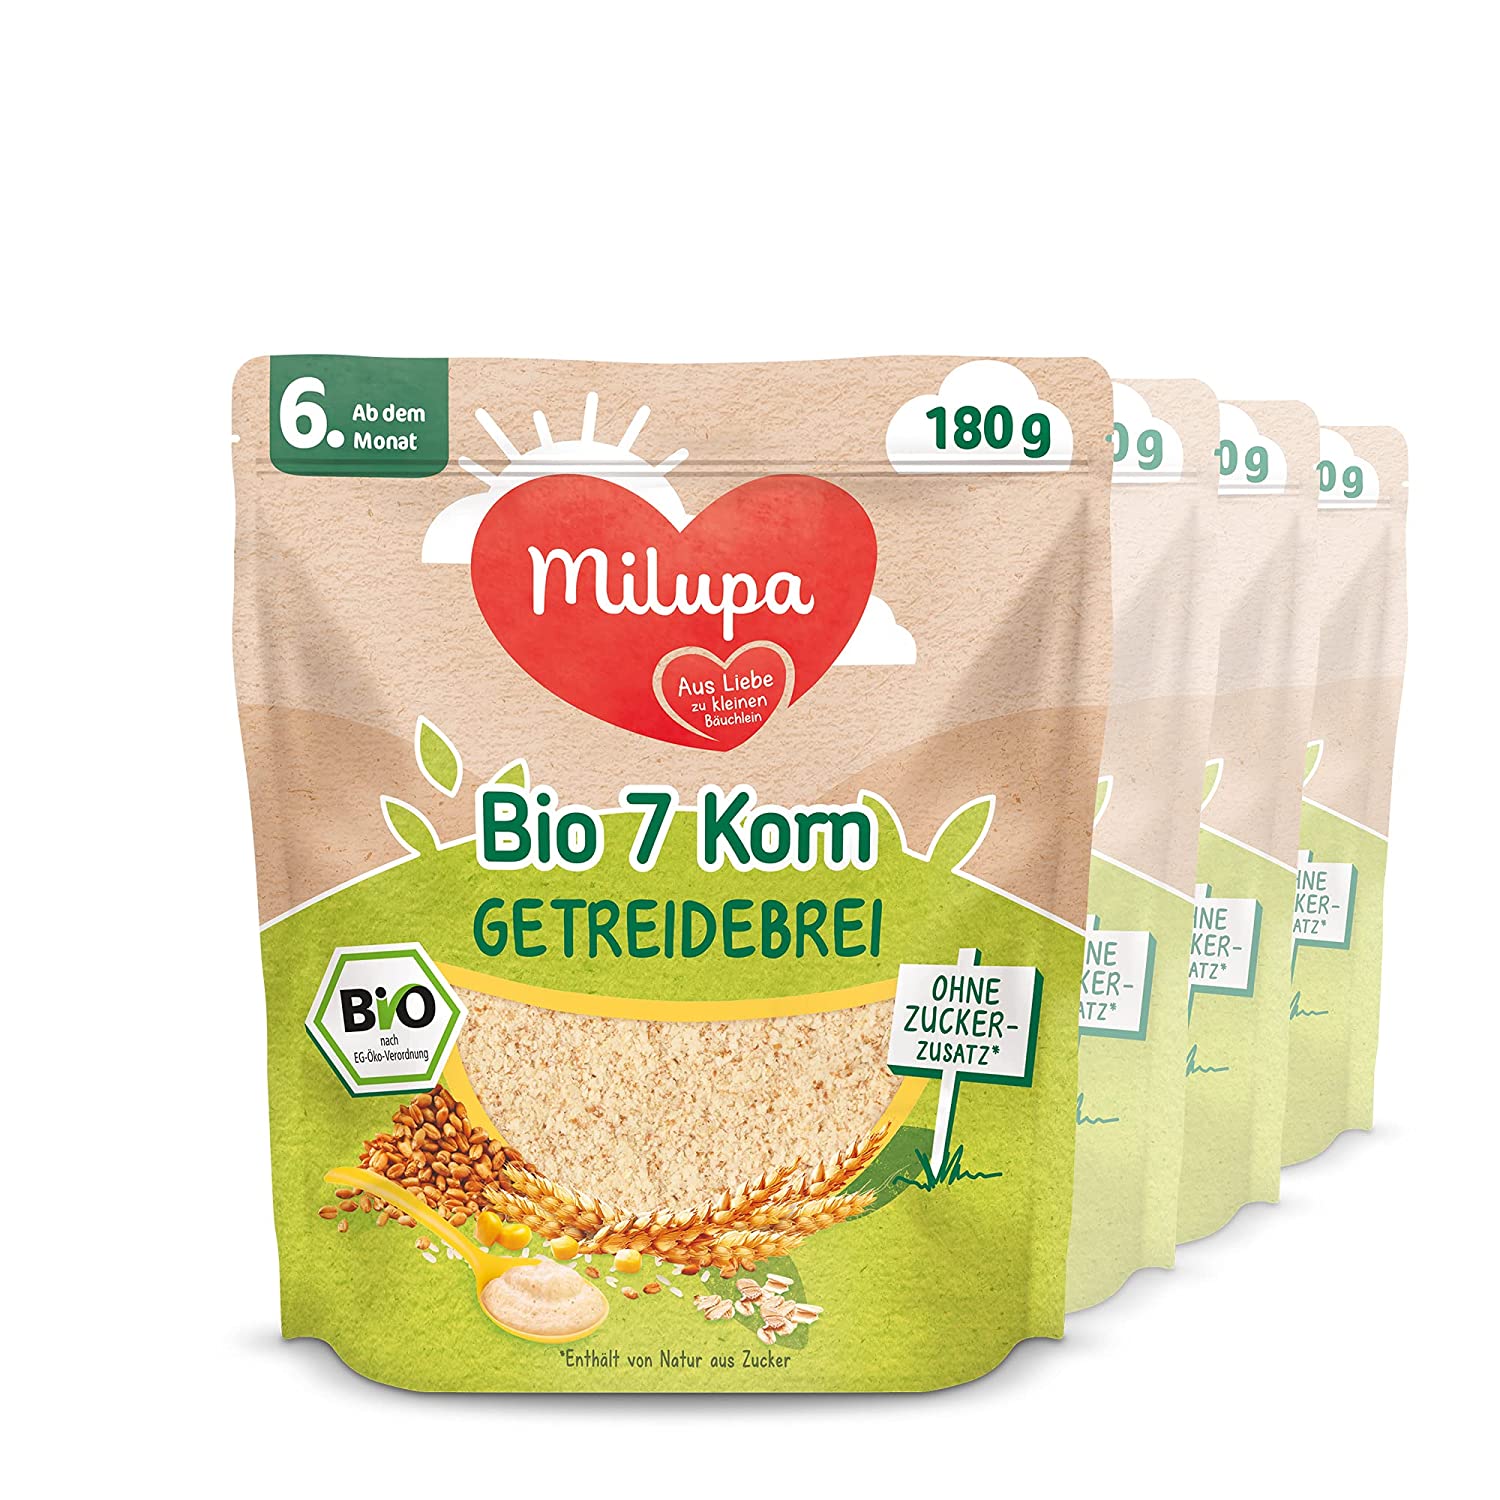 Milupa Bio 7 Korn Getreidebrei, ohne Zuckerzusatz, 4 x 180g